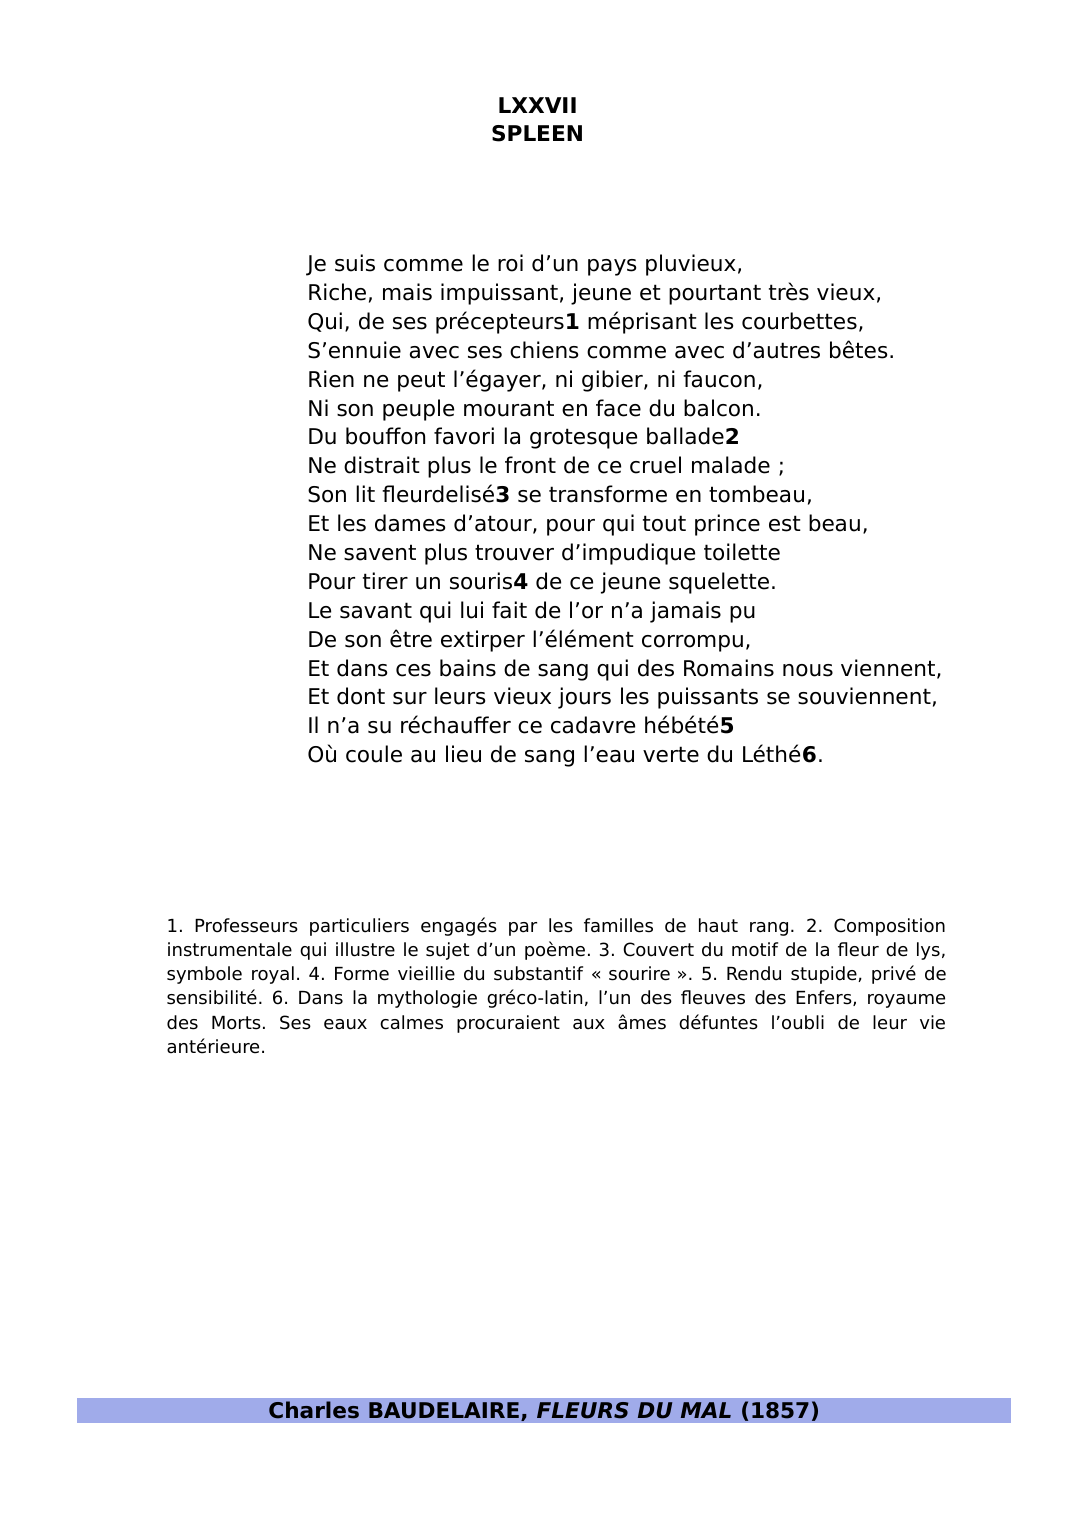 Prévisualisation du document spleen 77 de Baudelaire